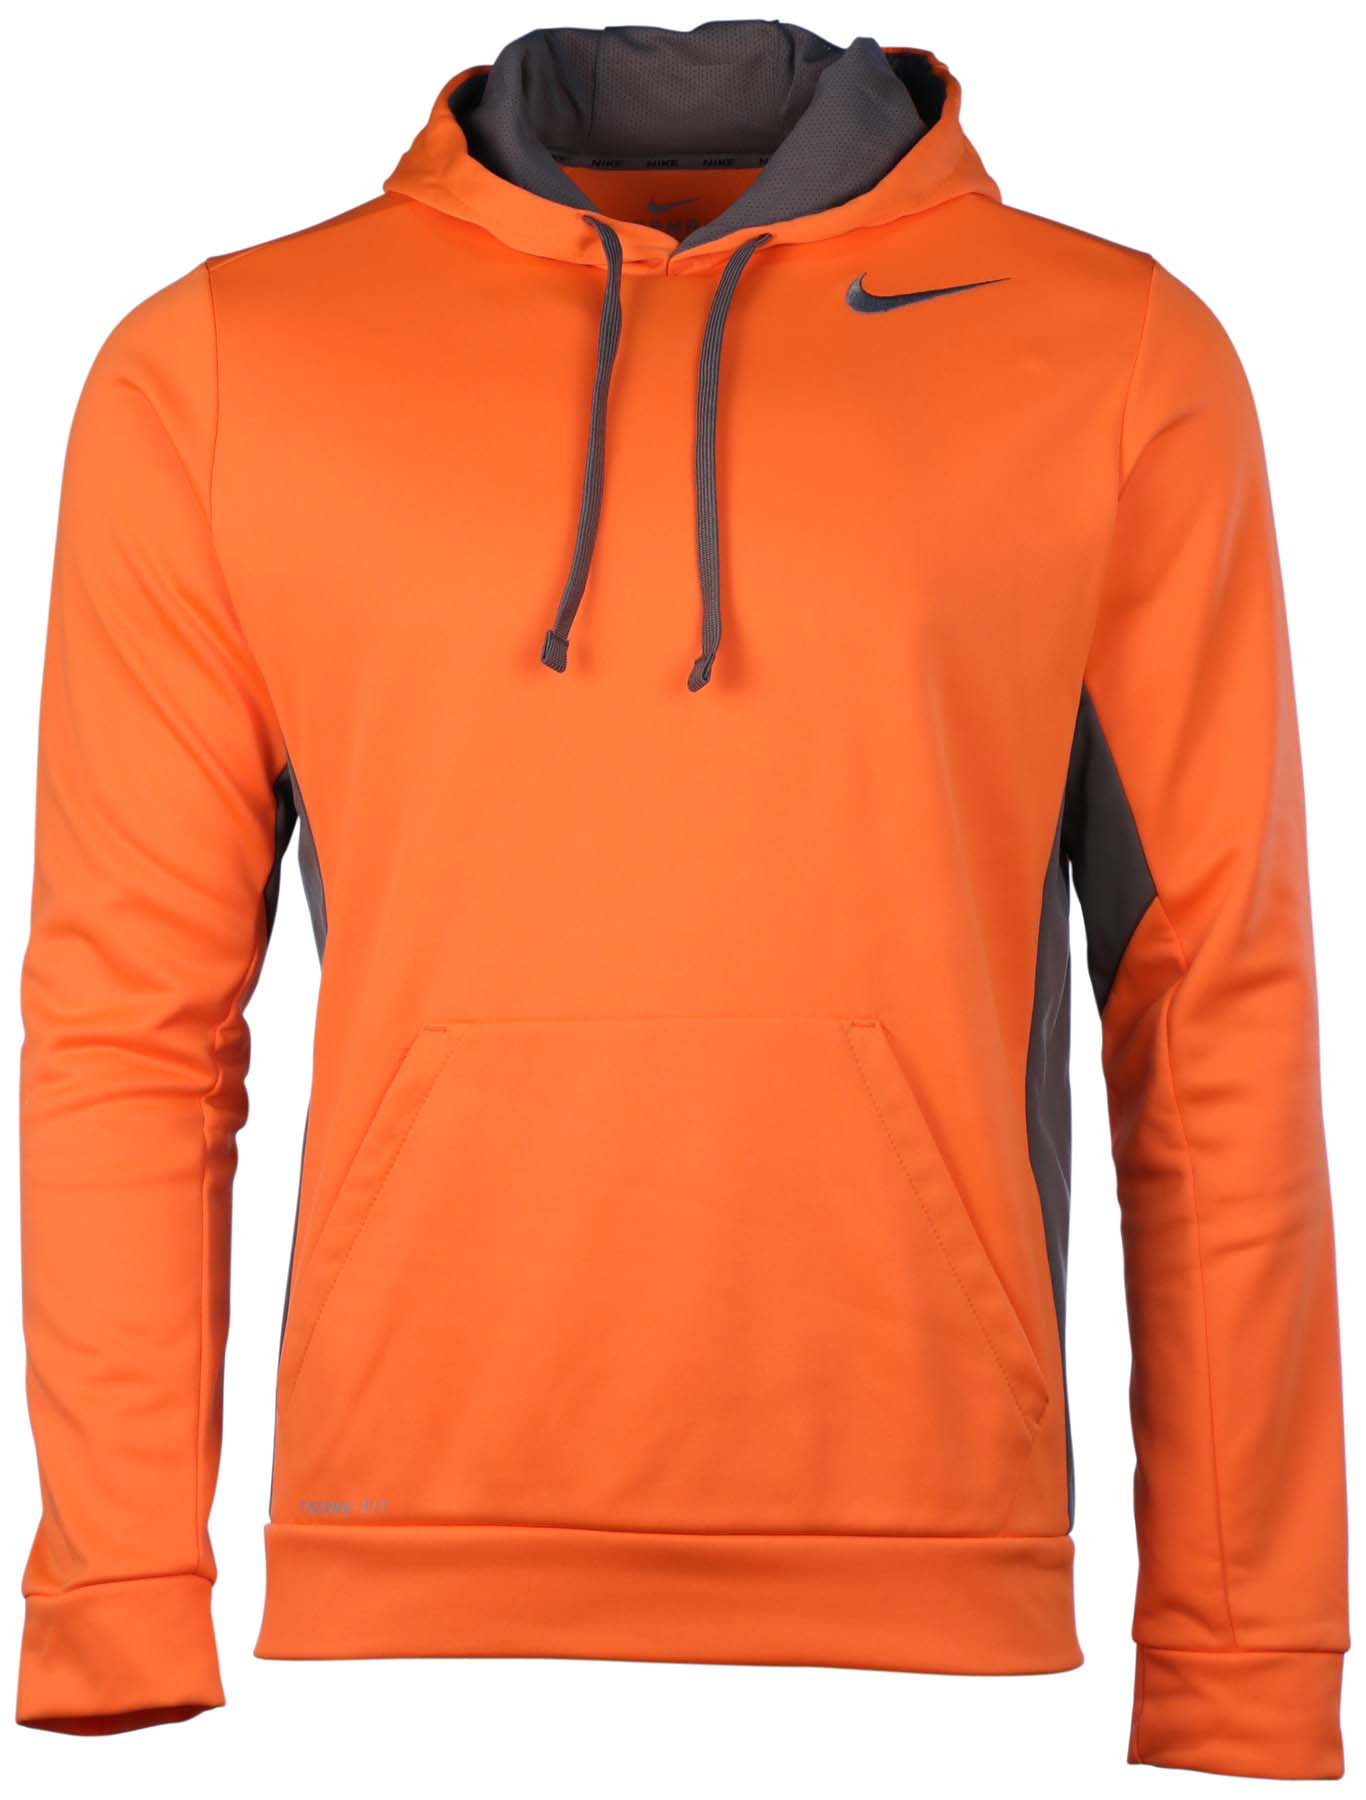 neon orange nike hoodie